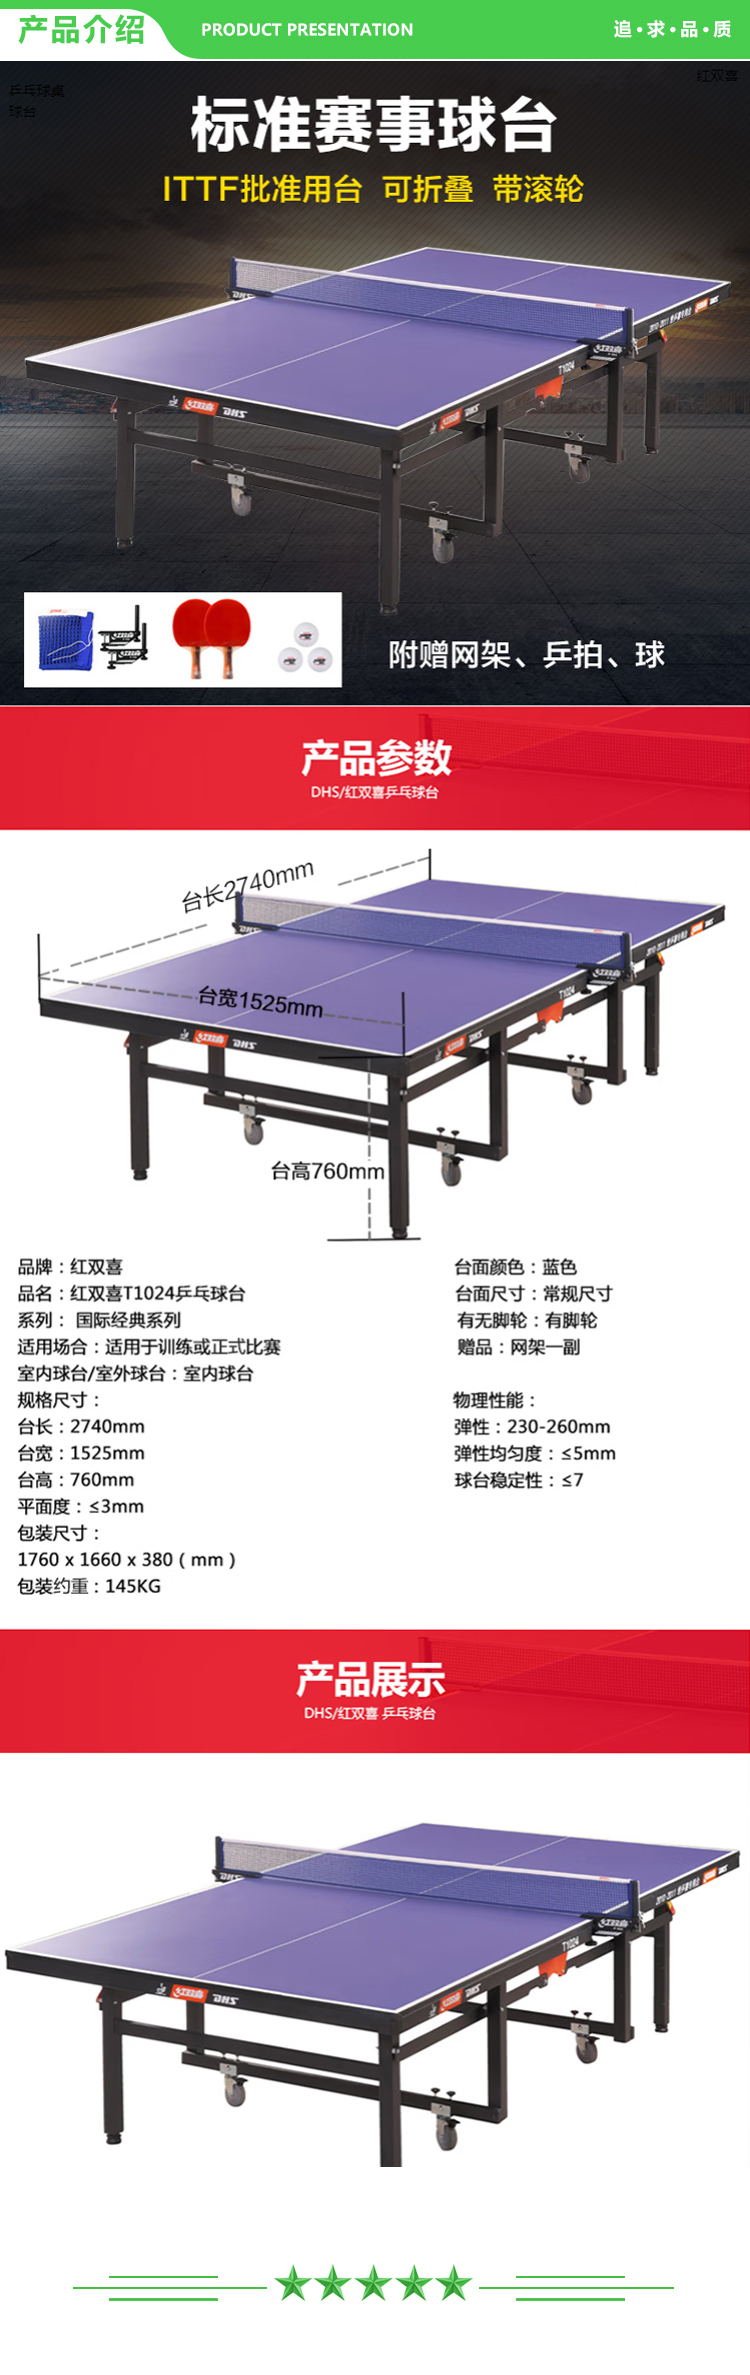 红双喜 DHS DXBC005-1(T1024) 乒乓球桌室内乒乓球台训练比赛用乒乓球案子 含网架-球拍-三星球  (2).jpg